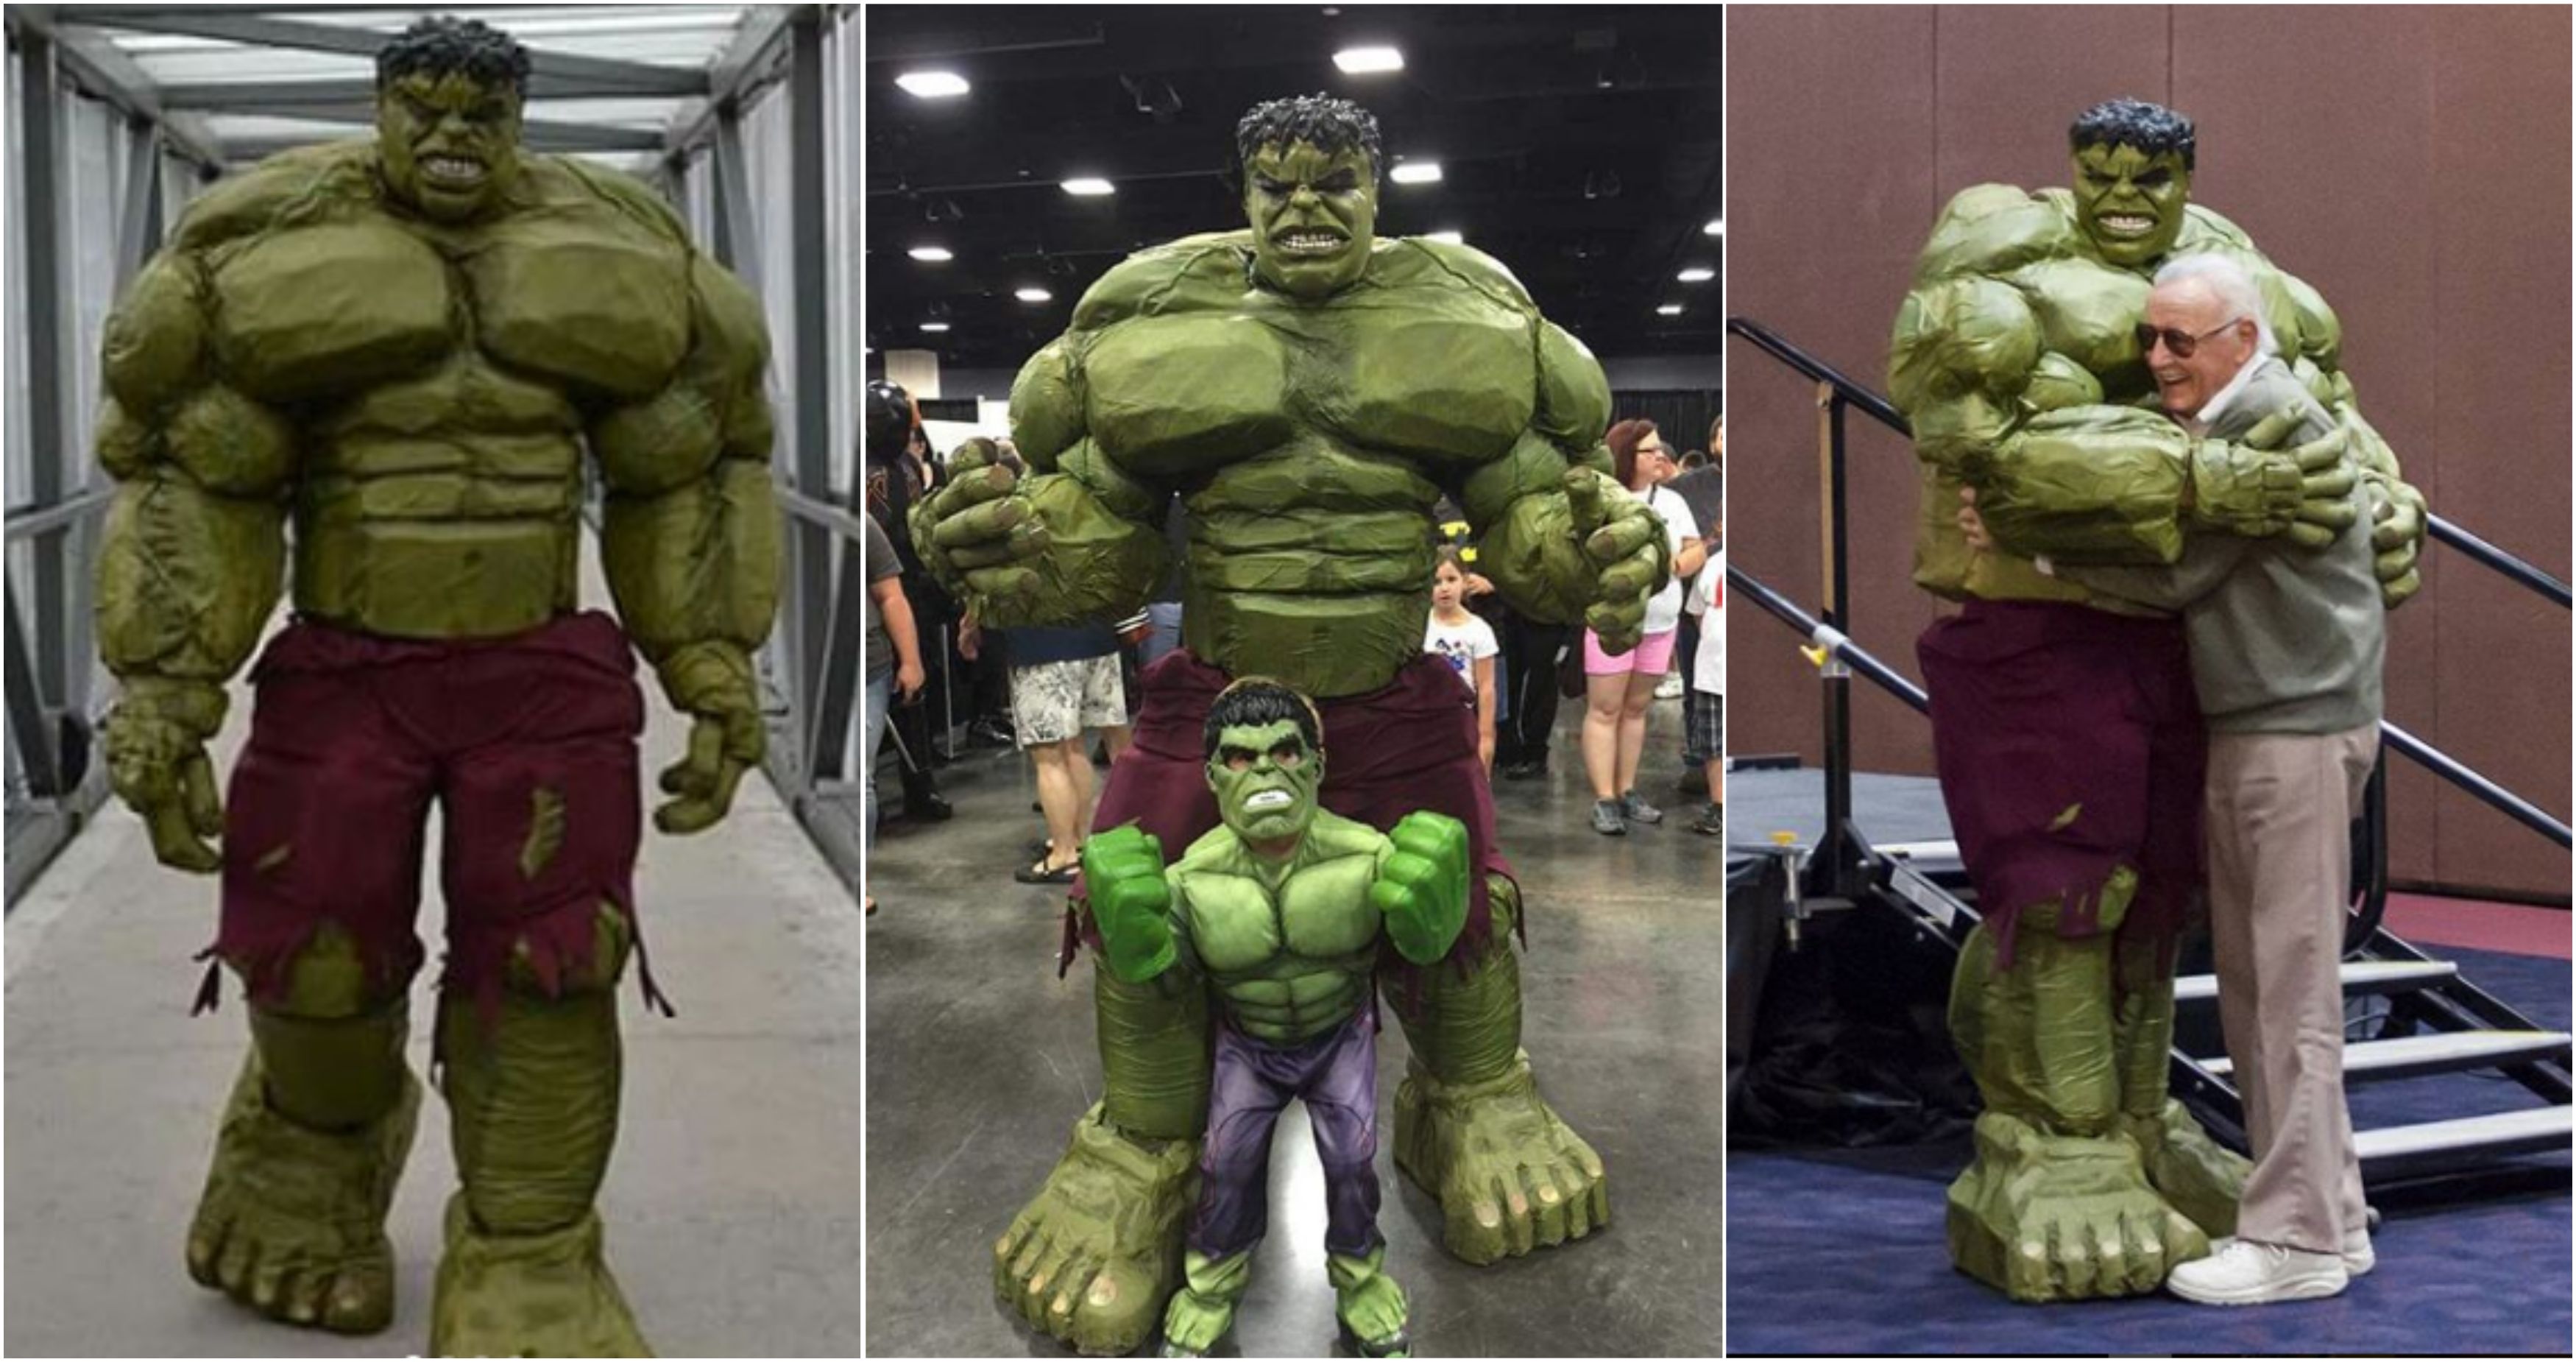 he_who_must_notbenamed_cosplay - Hulk and Mini-Hulk